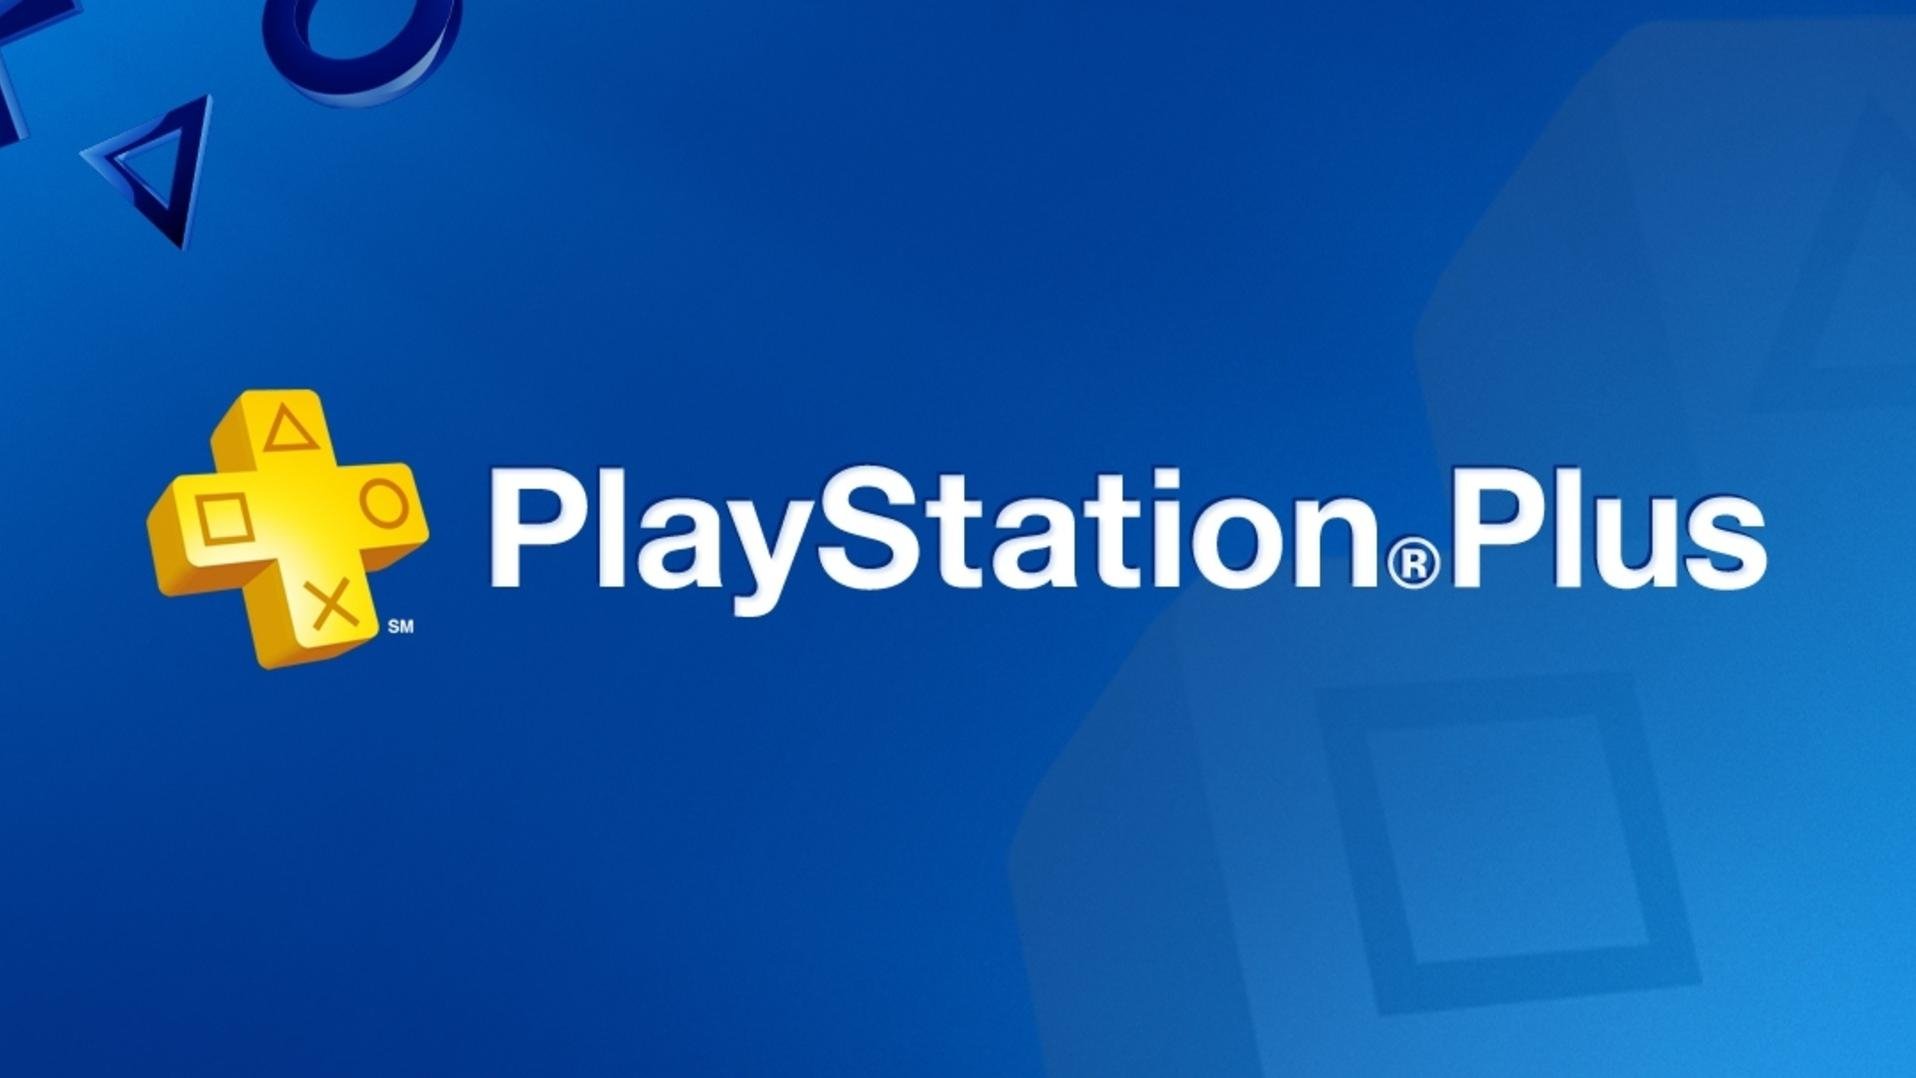 PlayStation PLUS 1/3/12 MONTHS PS PLUS UKRAINE